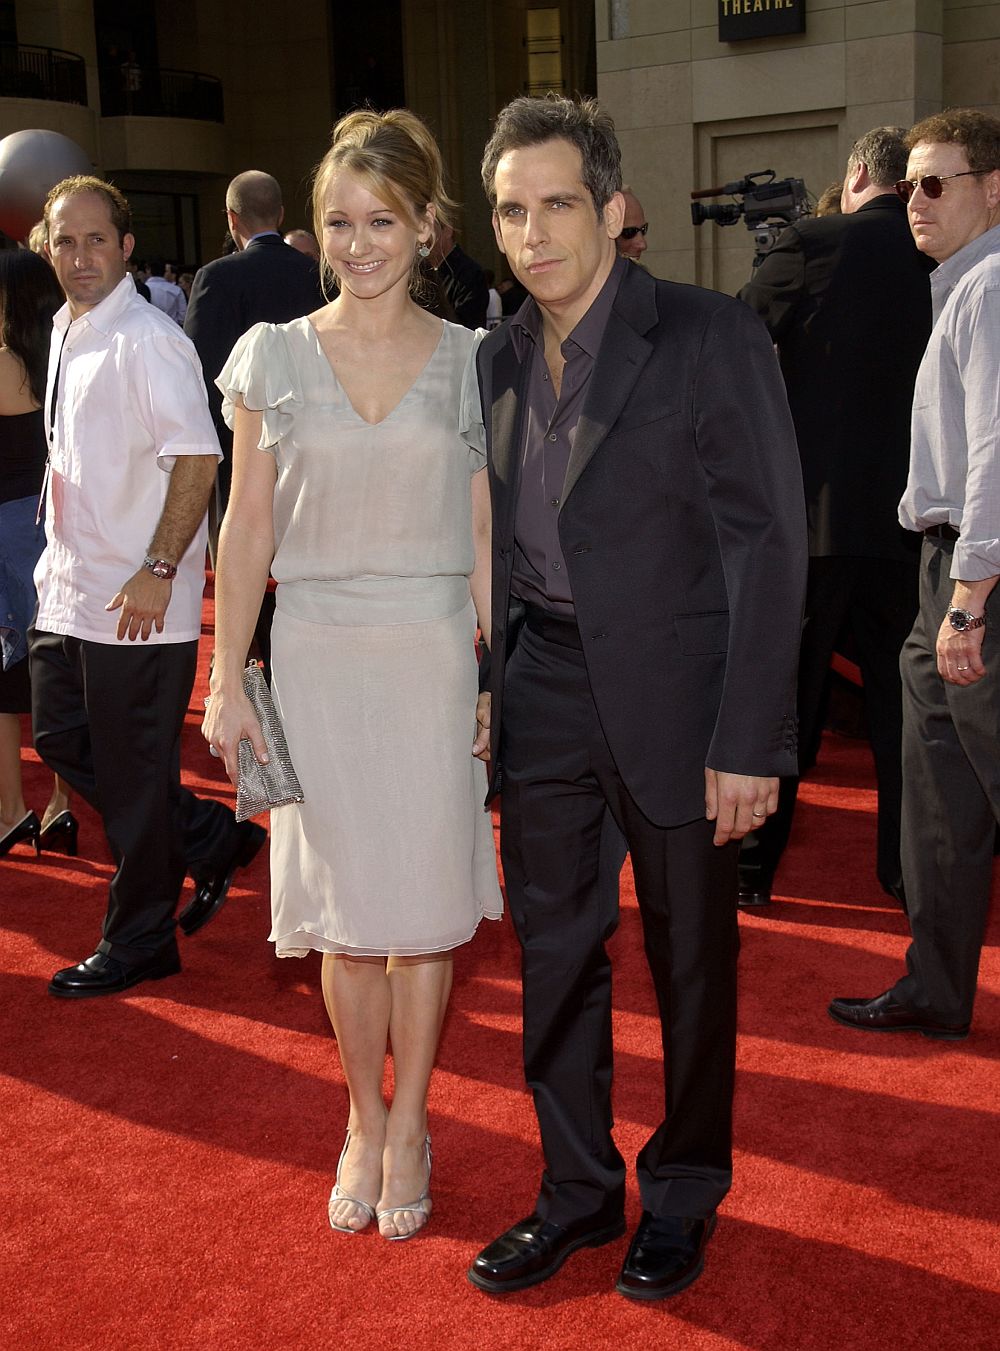 През 2000 г. минават под венчило и актьорите Бен Стилър и Кристин Тейлър. Двамата се срещат по време на снимките не телевизионно шоу година по-рано. Имат дъщеря и син, родени съответно през 2002 и 2005 г. Уви, те се развеждат през 2017 г. На снимката: Бен Стилър и Кристин Тейлър през 2000 г.